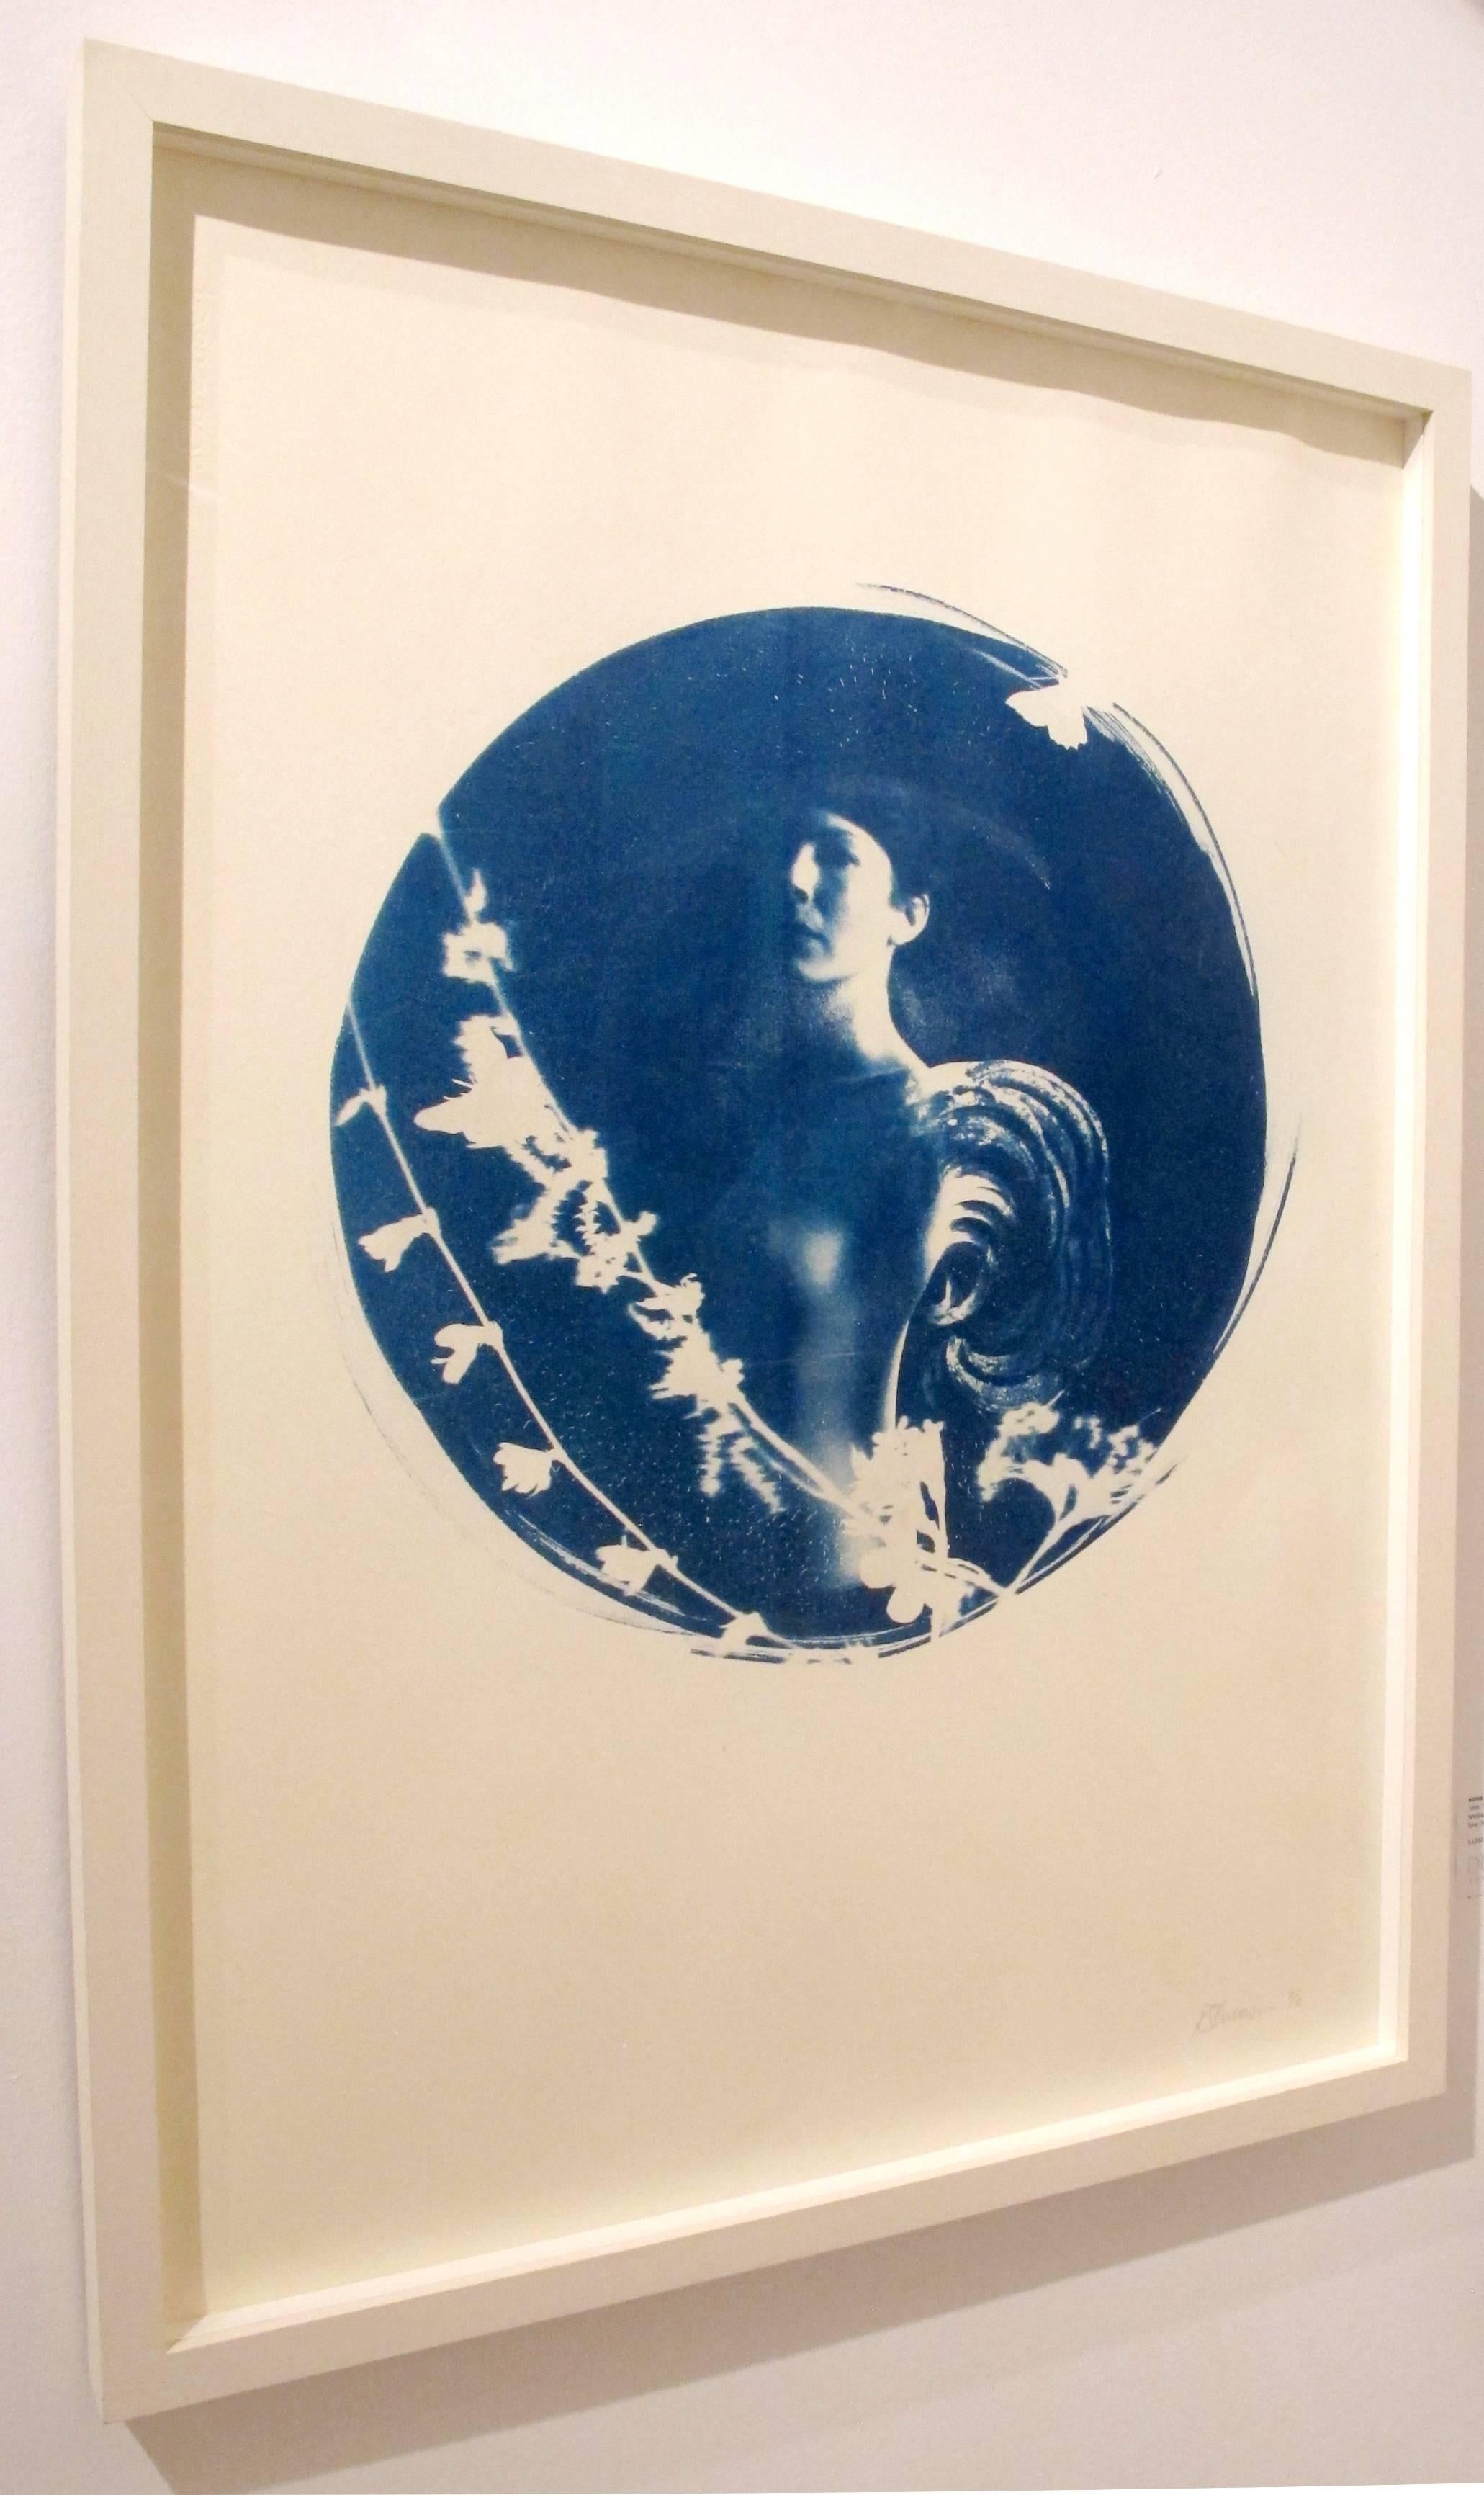 Aquila, cyanotype rond sur papier, cadre blanc en forme de boîte, romantique nu vintage - Contemporain Photograph par Rosie Emerson